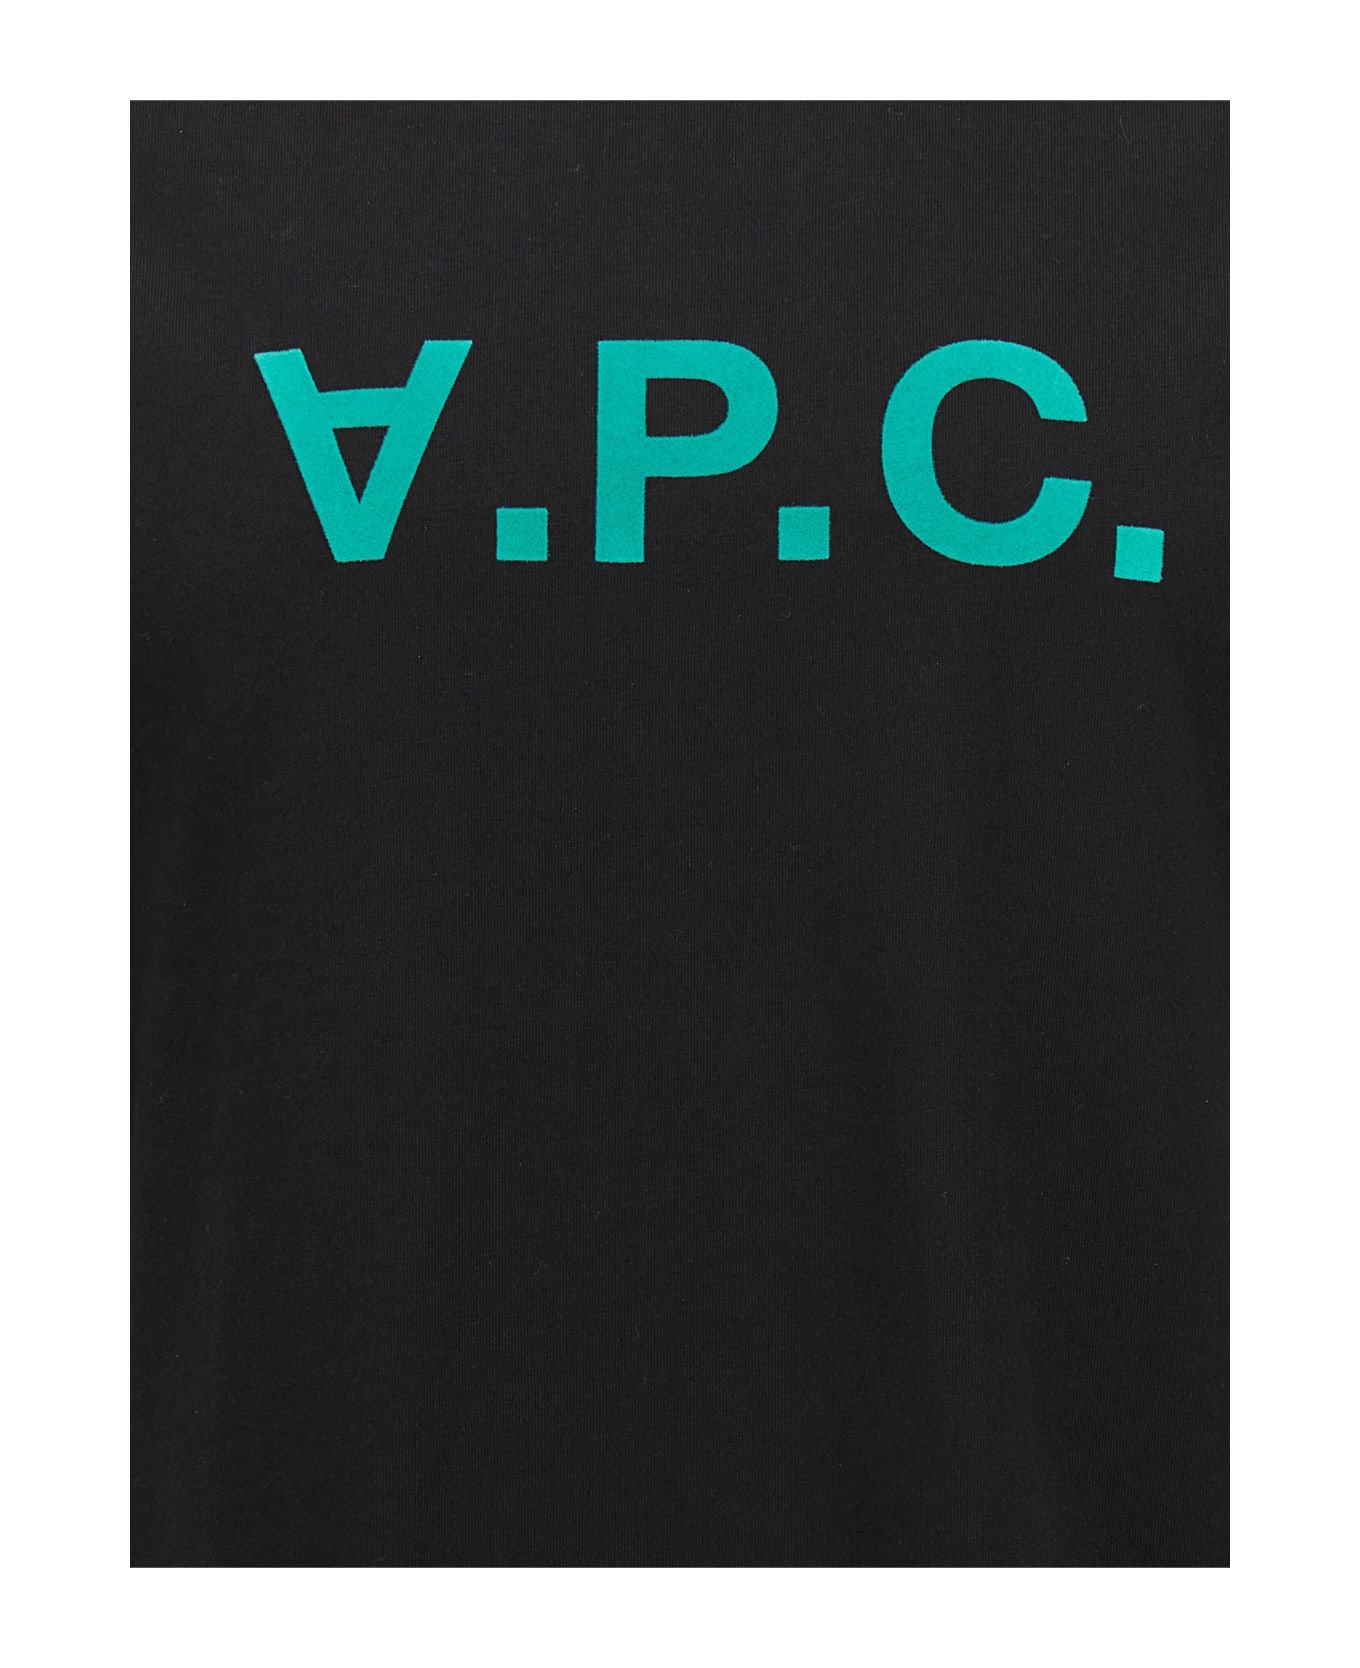 A.P.C. Vpc Logo Printed T-shirt - Black